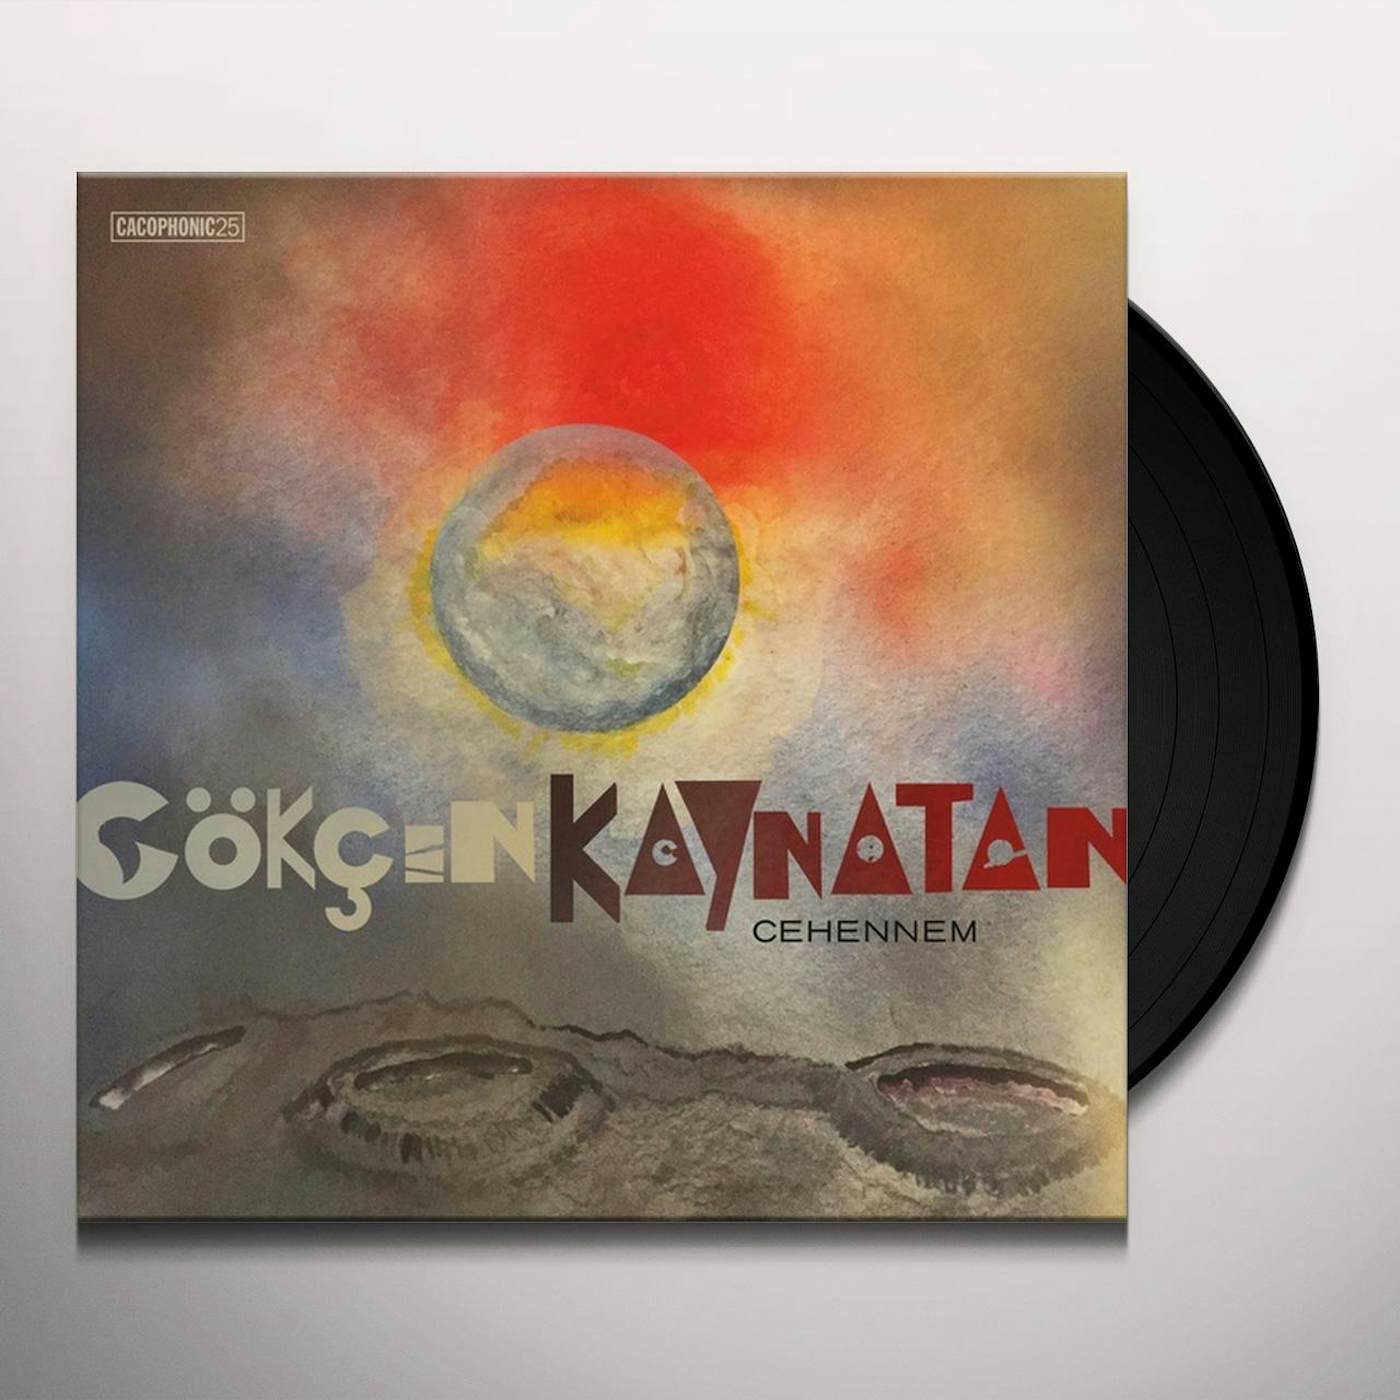 Gökçen Kaynatan Cehennem Vinyl Record